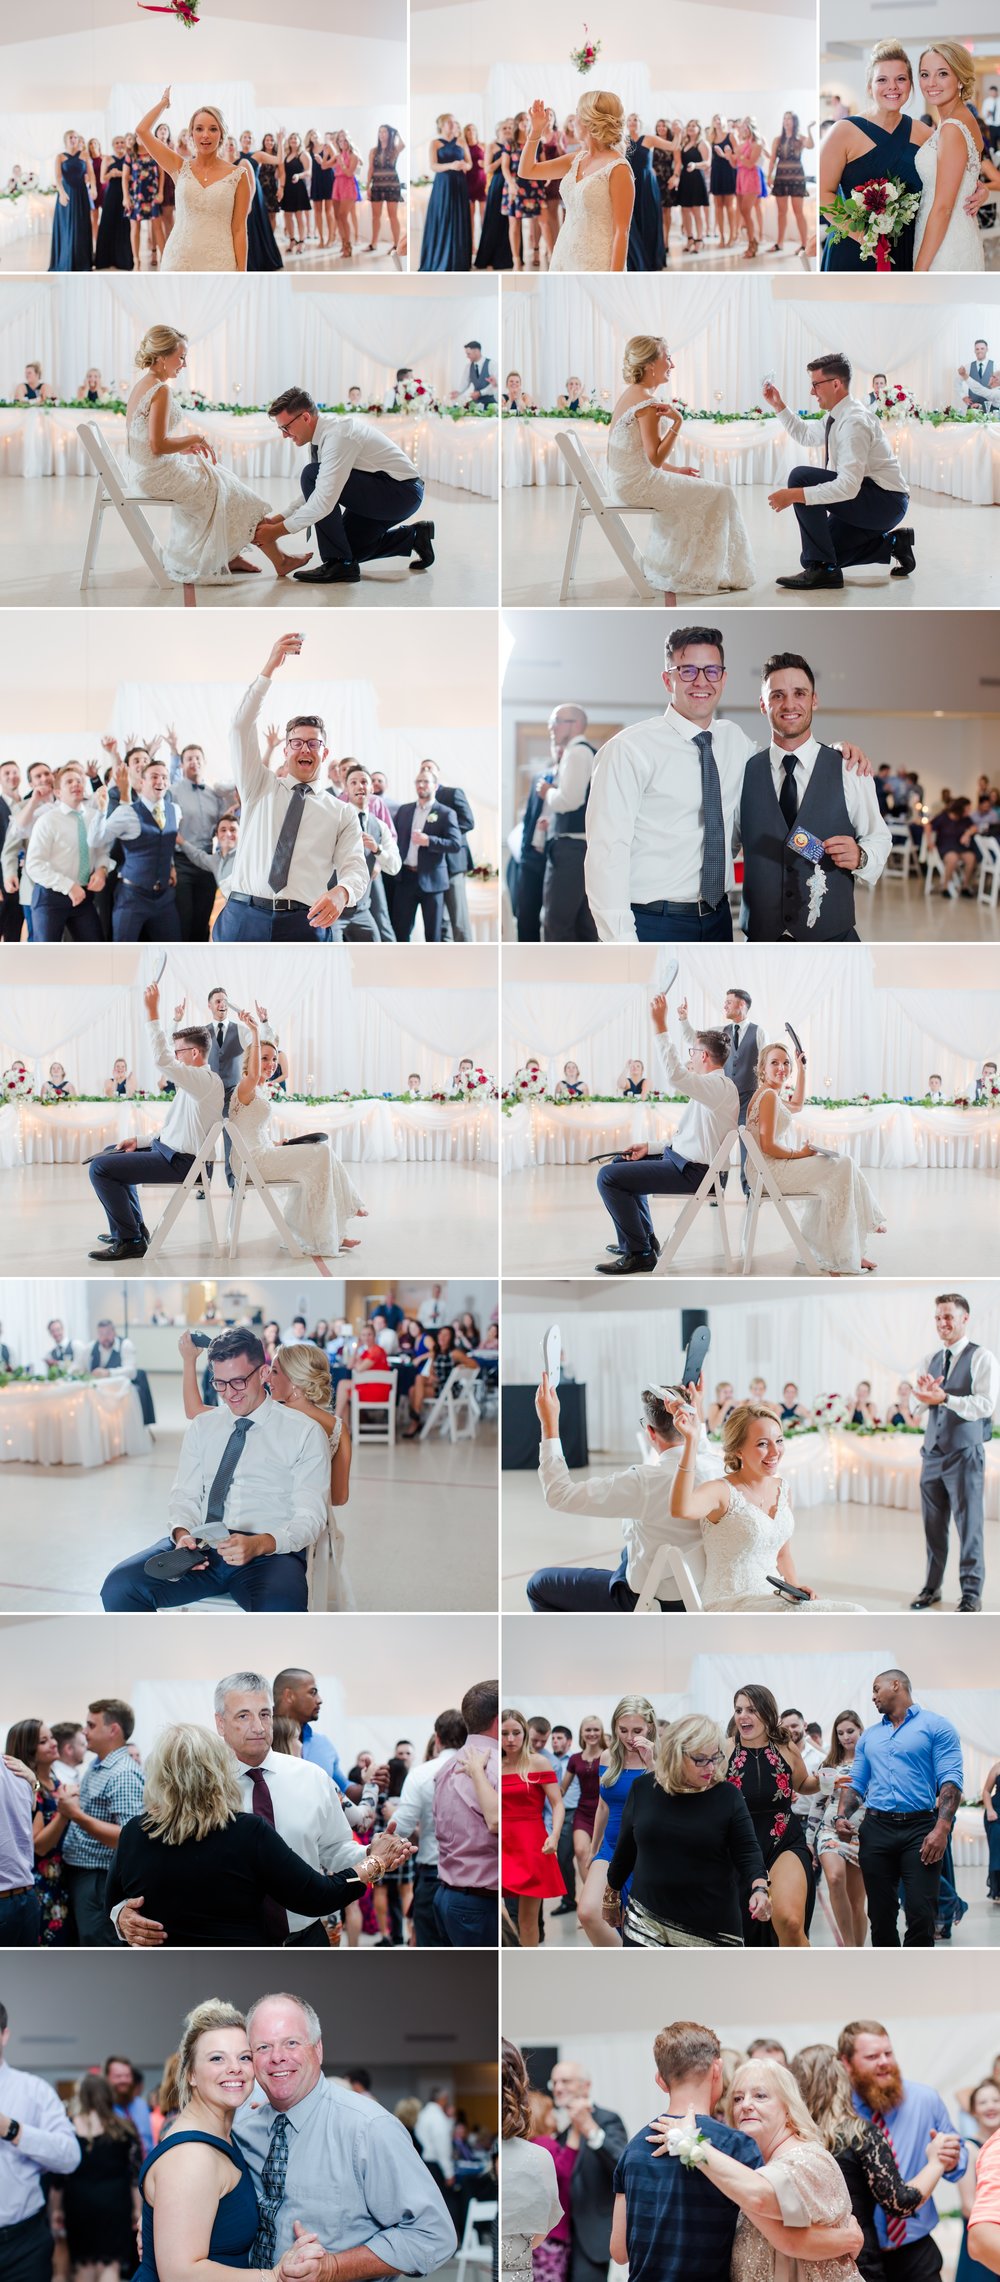  wedding_photography_reception_navy_gold_ideas_first_dance_pics_cake_details_bouquet_garter 